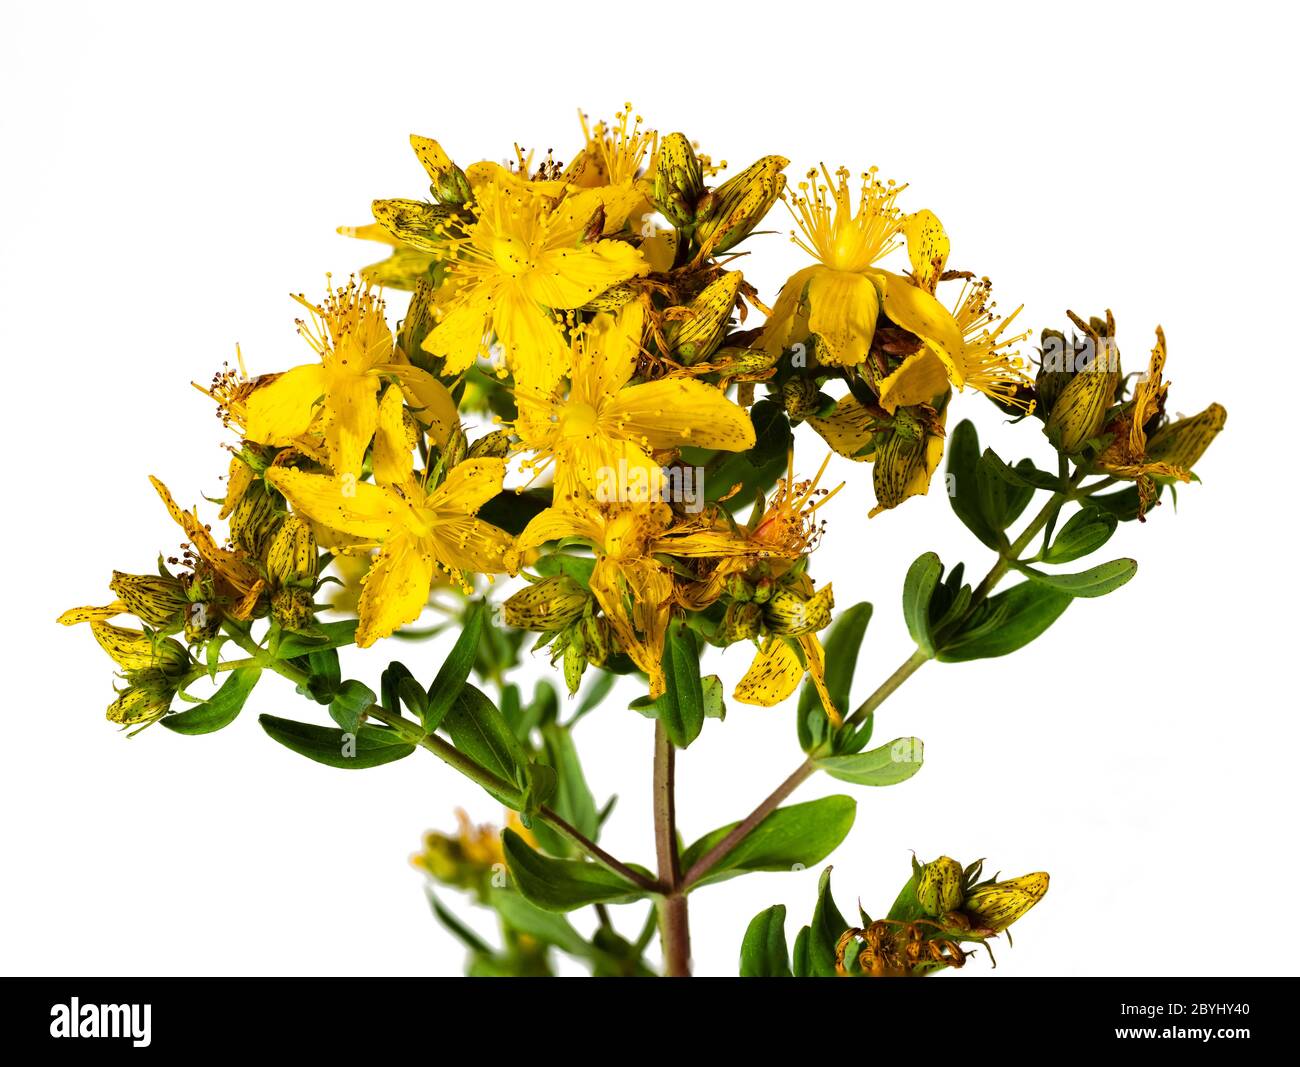 Giallo, fioritura estiva iniziale del Regno Unito fiore selvatico, Hypericum perforatum, perforare l'erba di San Giovanni, un rimedio a base di erbe su uno sfondo bianco Foto Stock